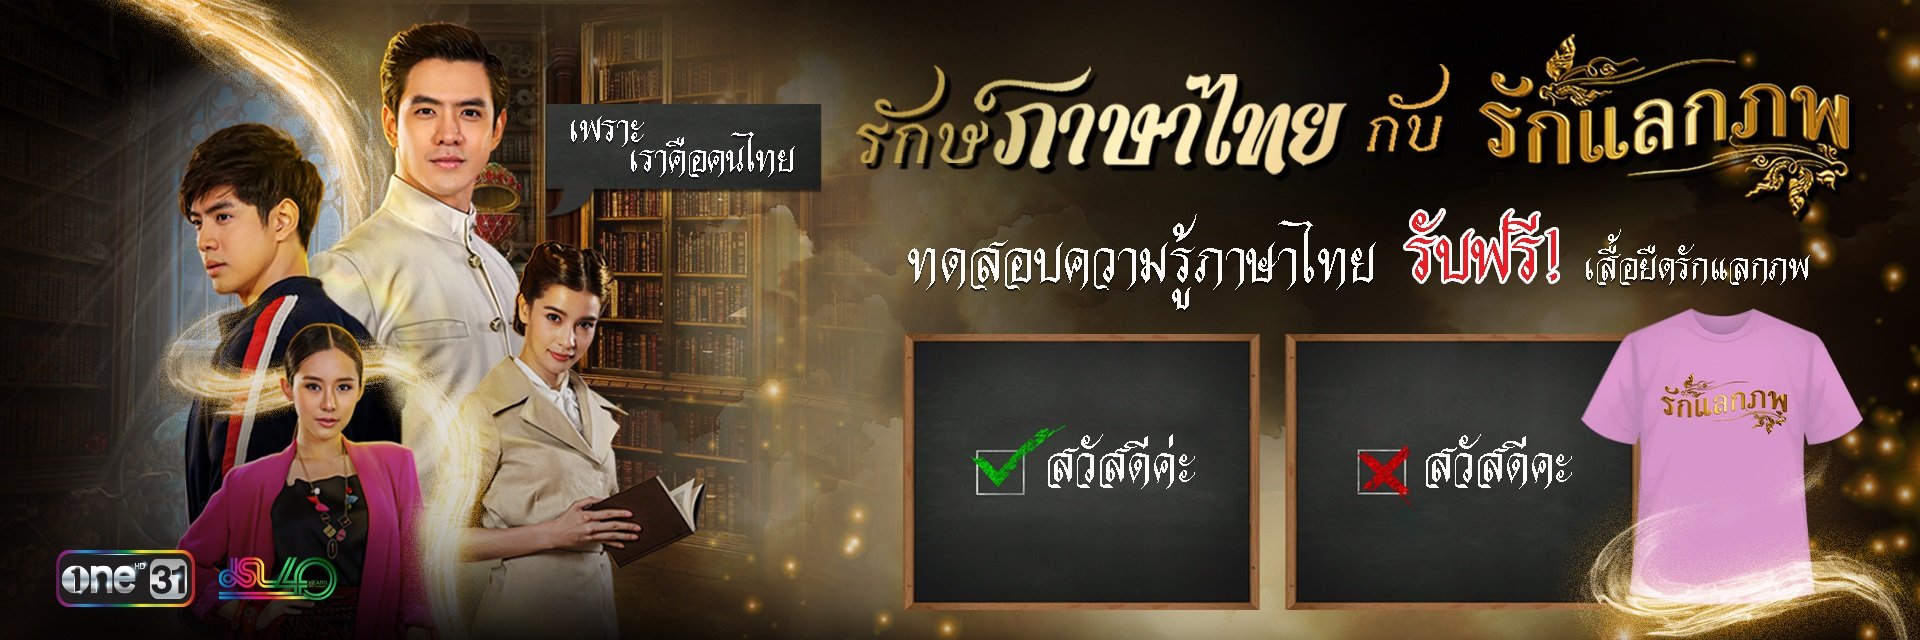 รักษ์ภาษาไทย กับ รักแลกภพ ทดสอบความรู้ภาษาไทย รับฟรี! เสื้อยืดรักแลกภพ